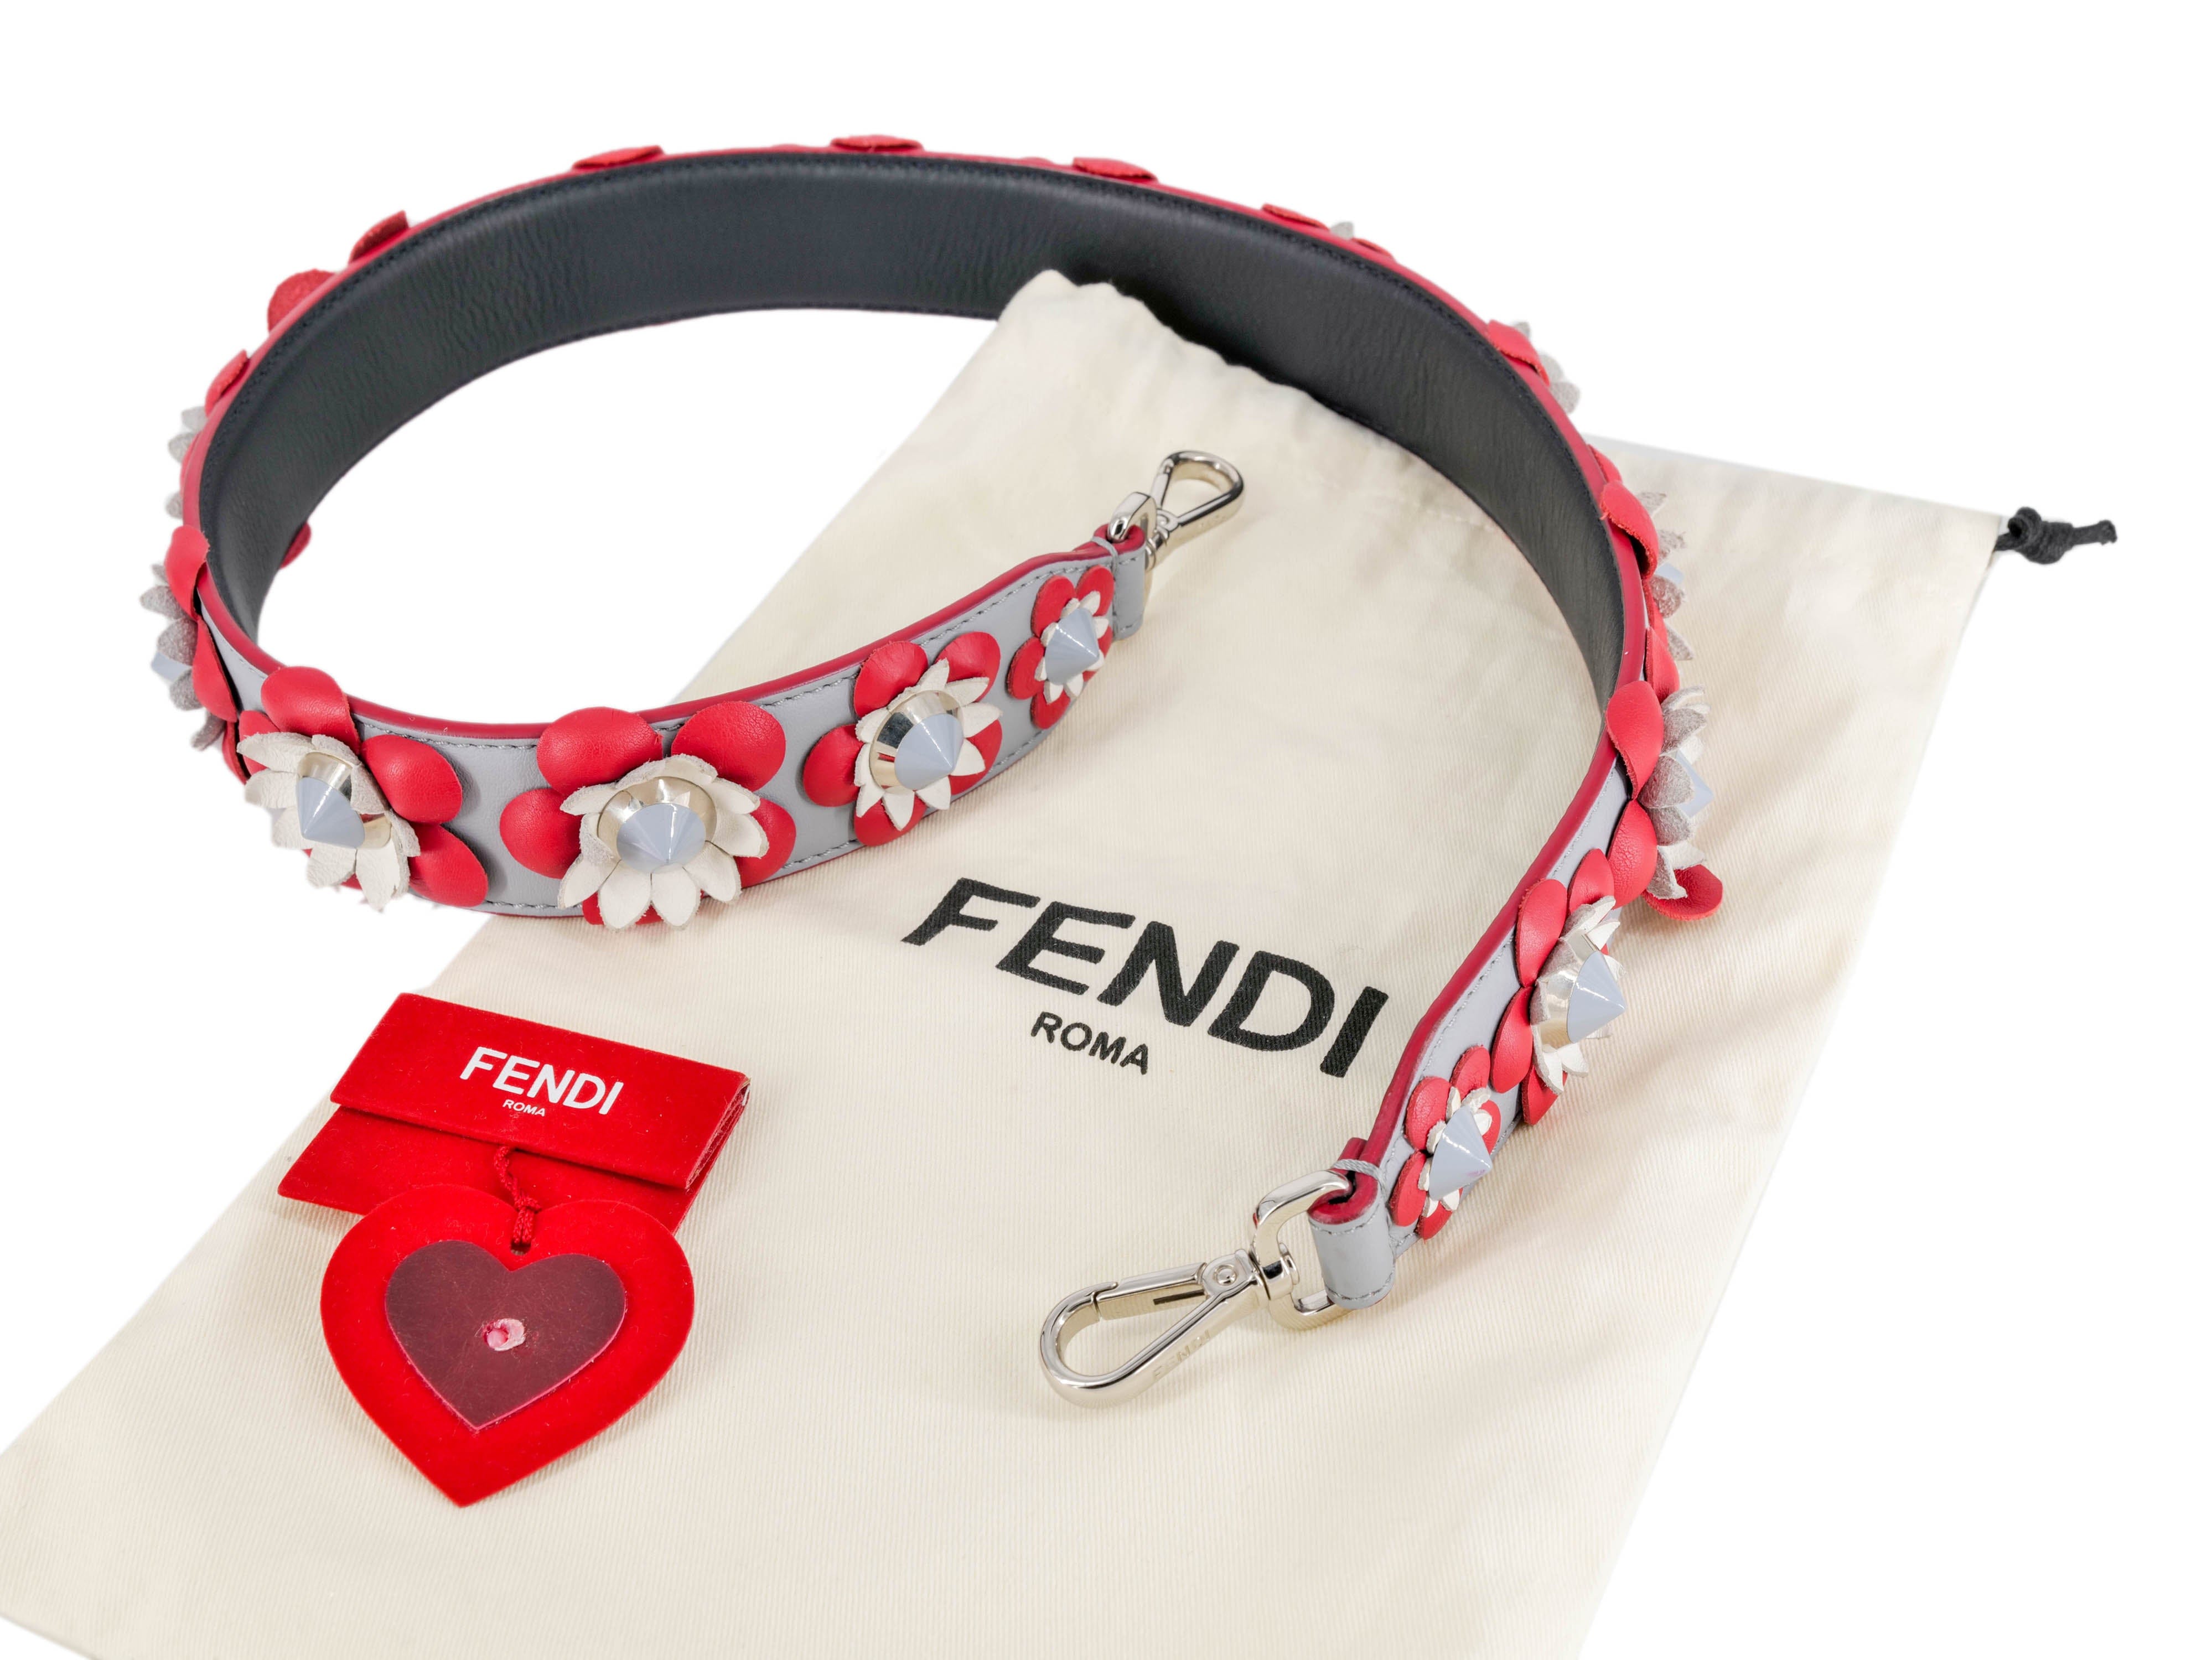 Fendi Fendi Red Bag Strap Floral